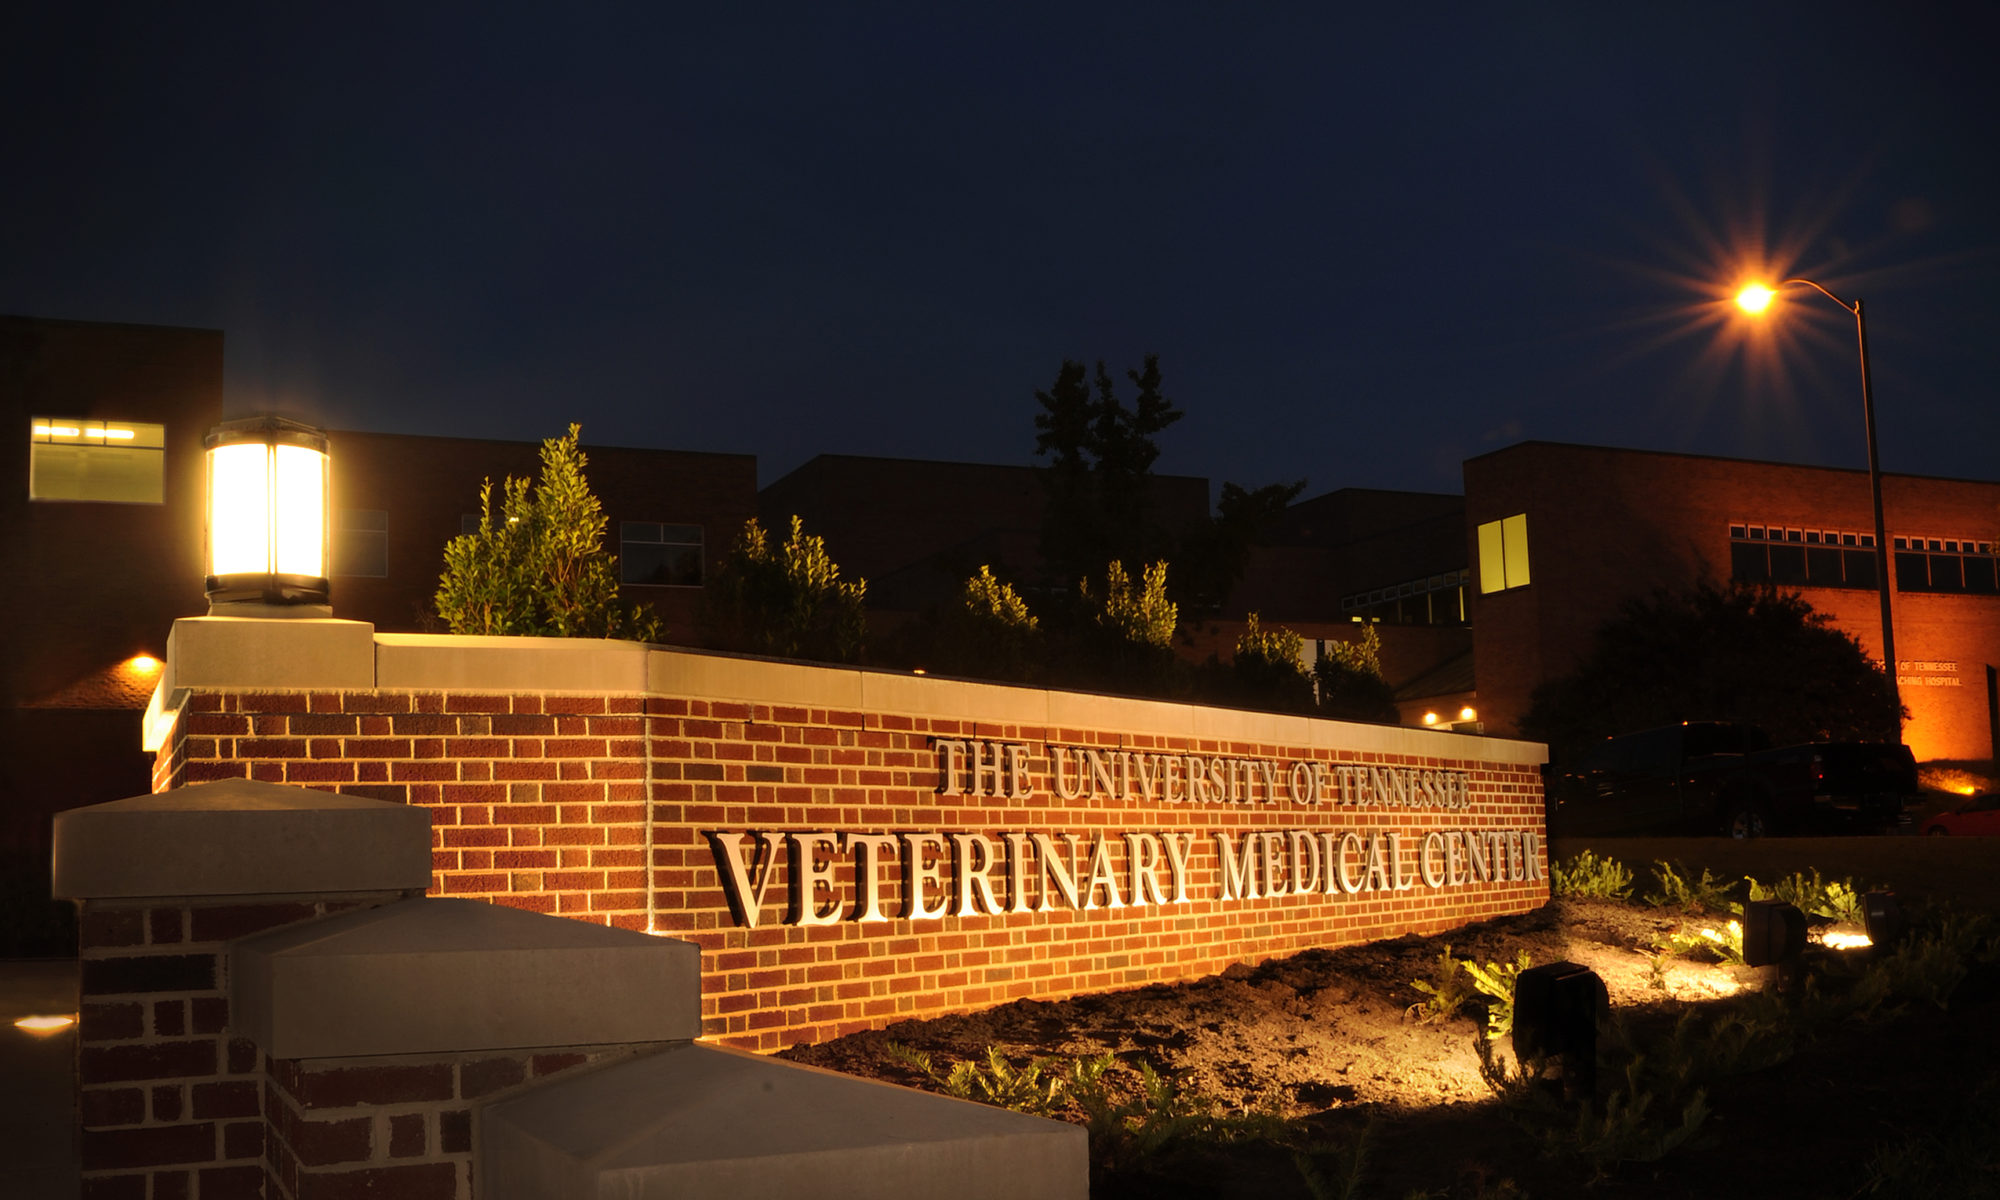 UT Veterinary Medical Center sign lit up at night